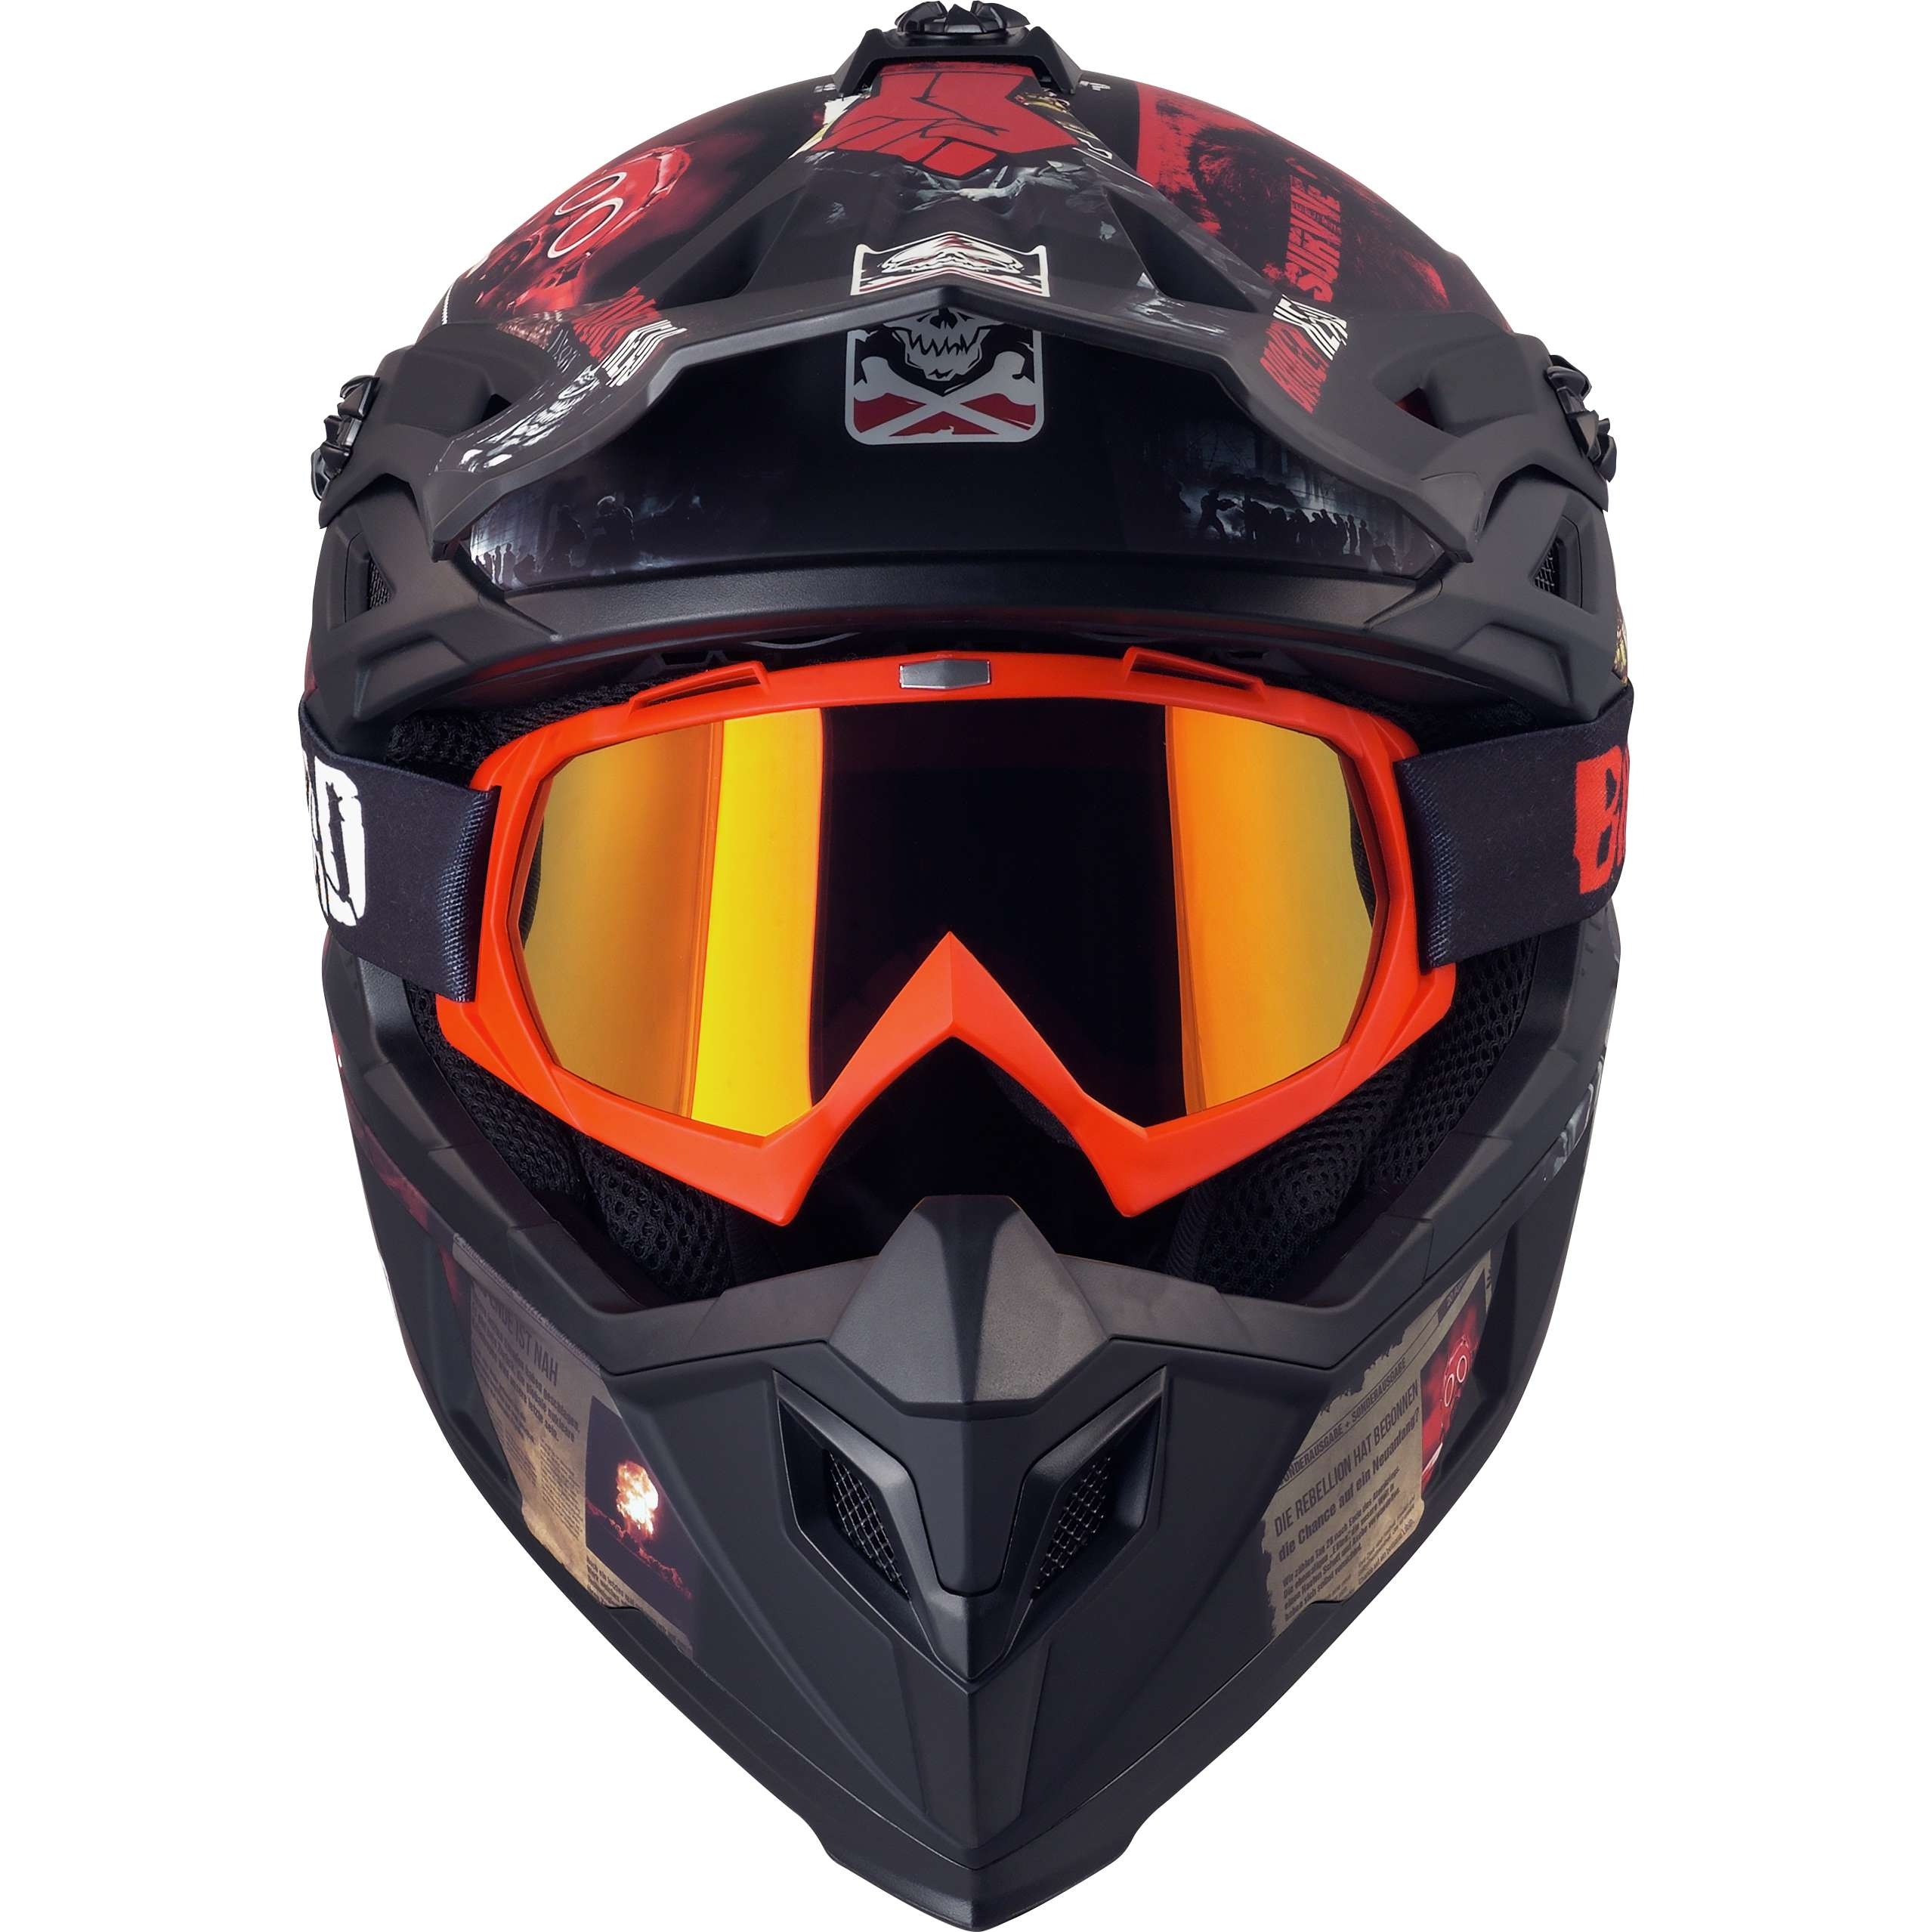 Enduro Broken Head MX-2 Goggle Rot Mit UV-Schutz Motorrad-Brille Für Motocross Offroad Downhill 